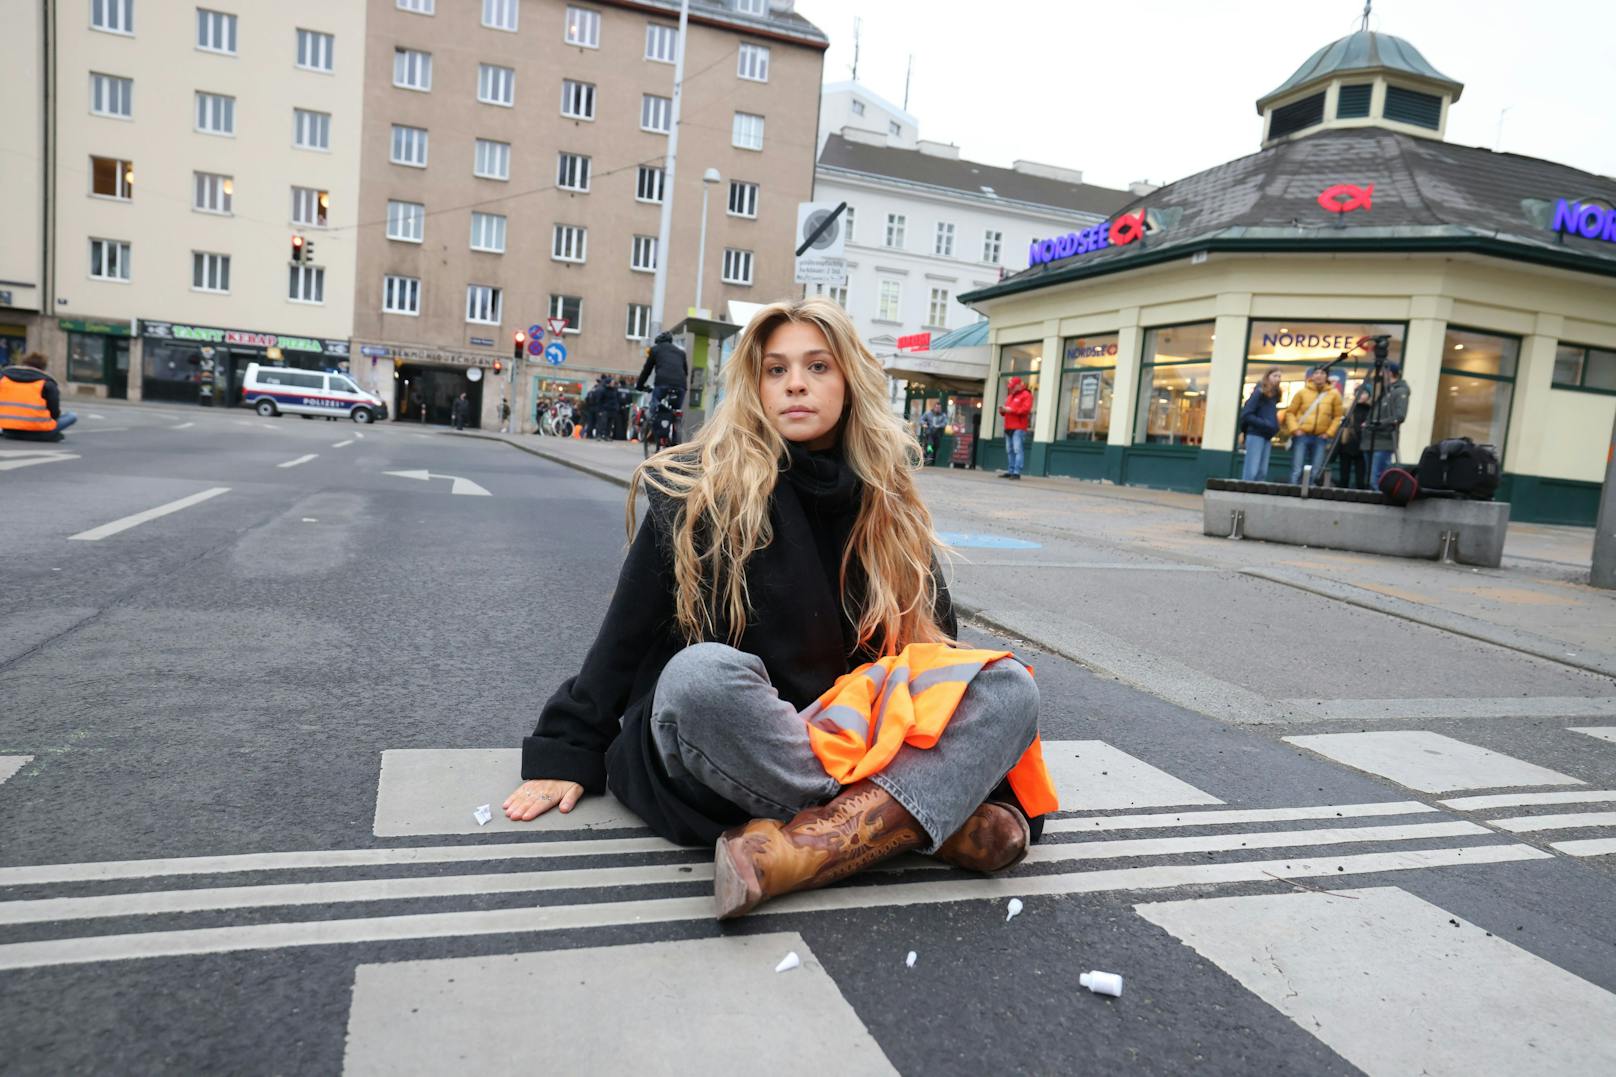 Die "Letzte Generation" sorgte am Montag für ein Verkehrs-Chaos in der Wiener Innenstadt. Eine der Aktivistinnen begeistert nun User auf Tiktok.